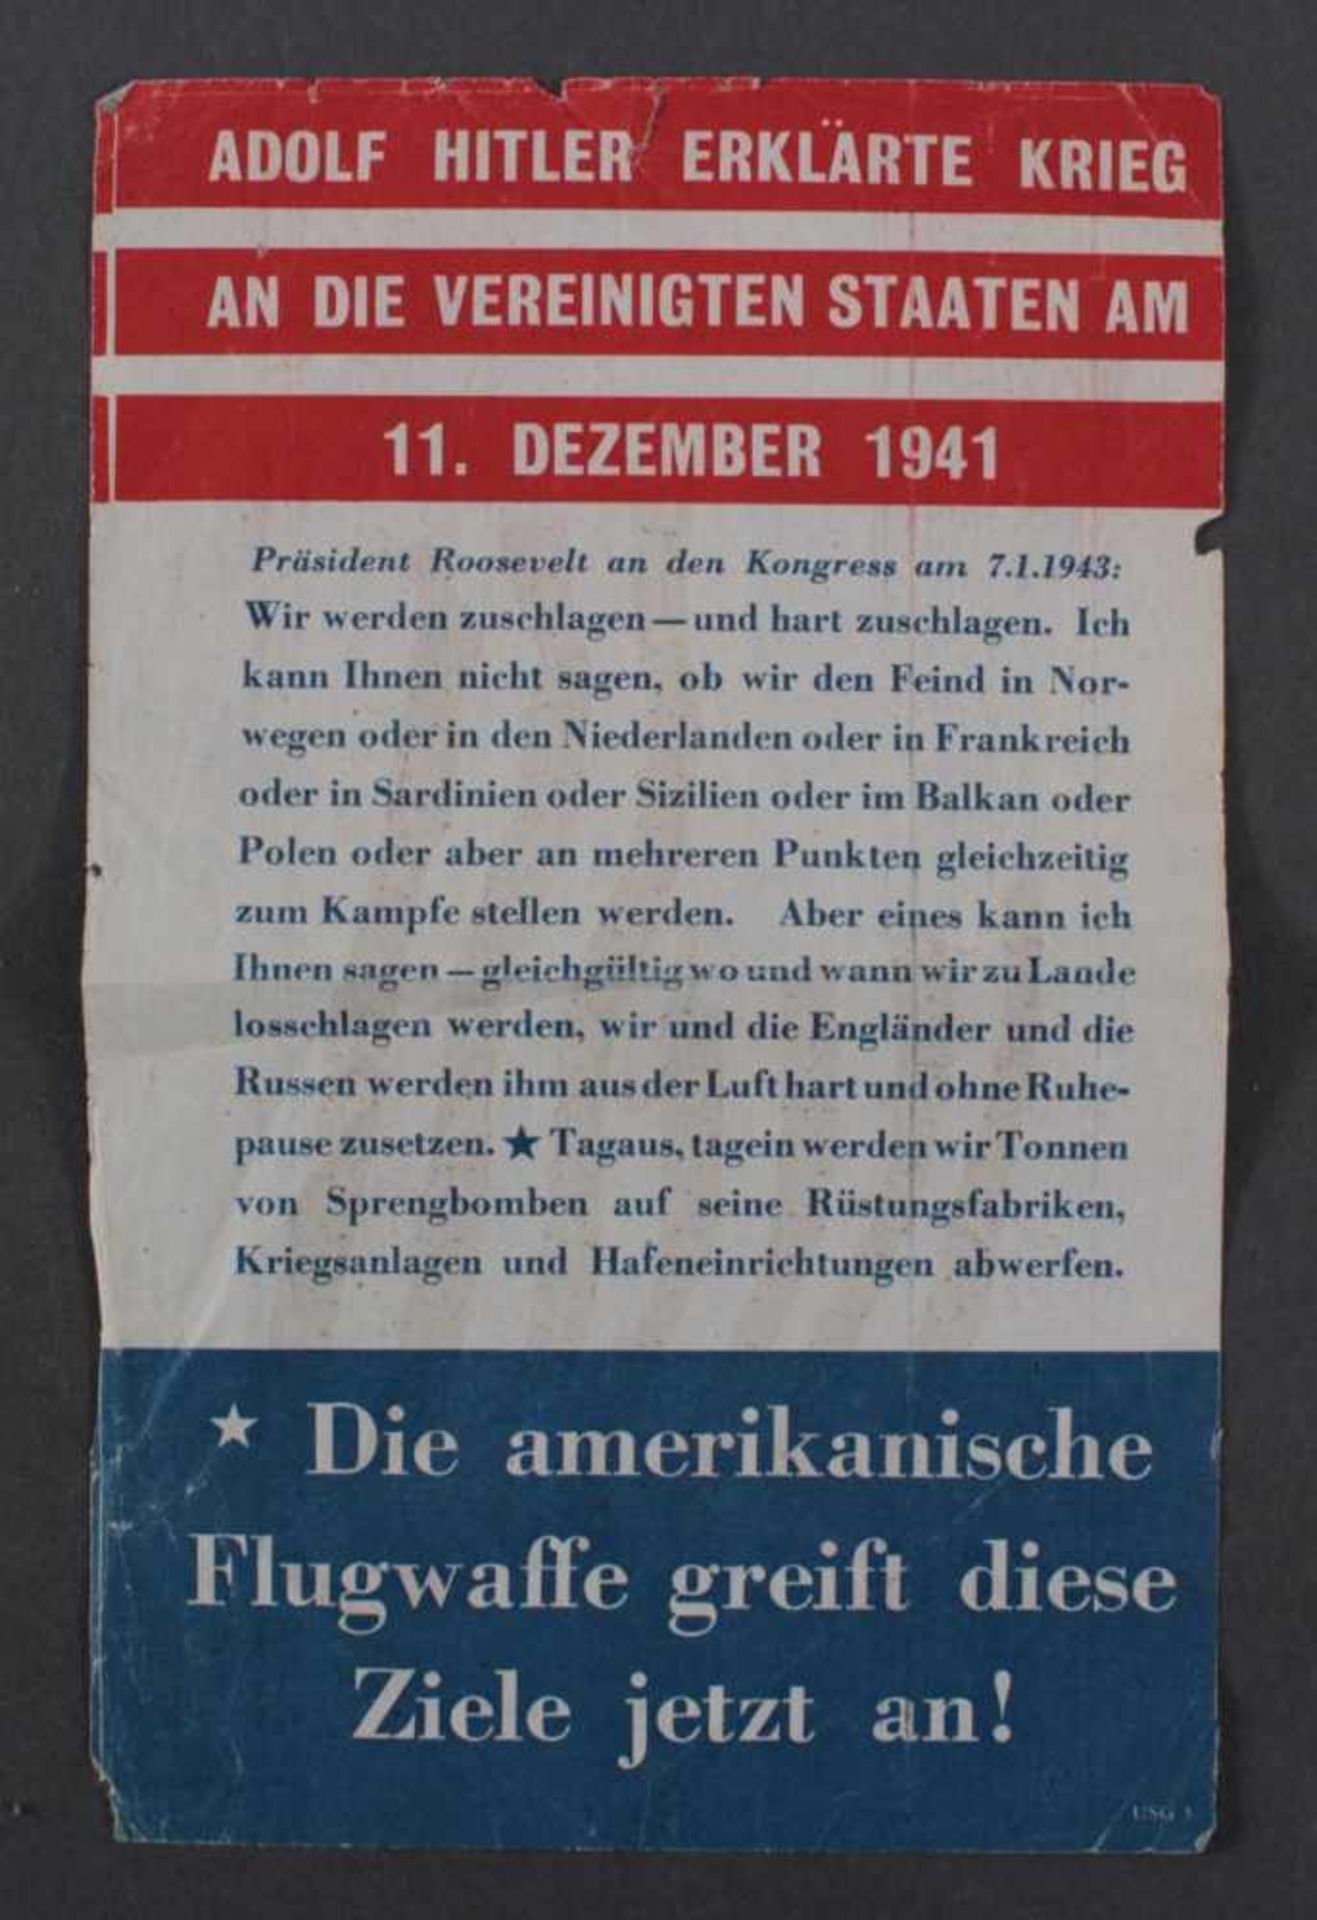 1943, amerikanisches Propaganda-FlugblattAnkündigung von Luftangriffen auf Deutschland in den Farben